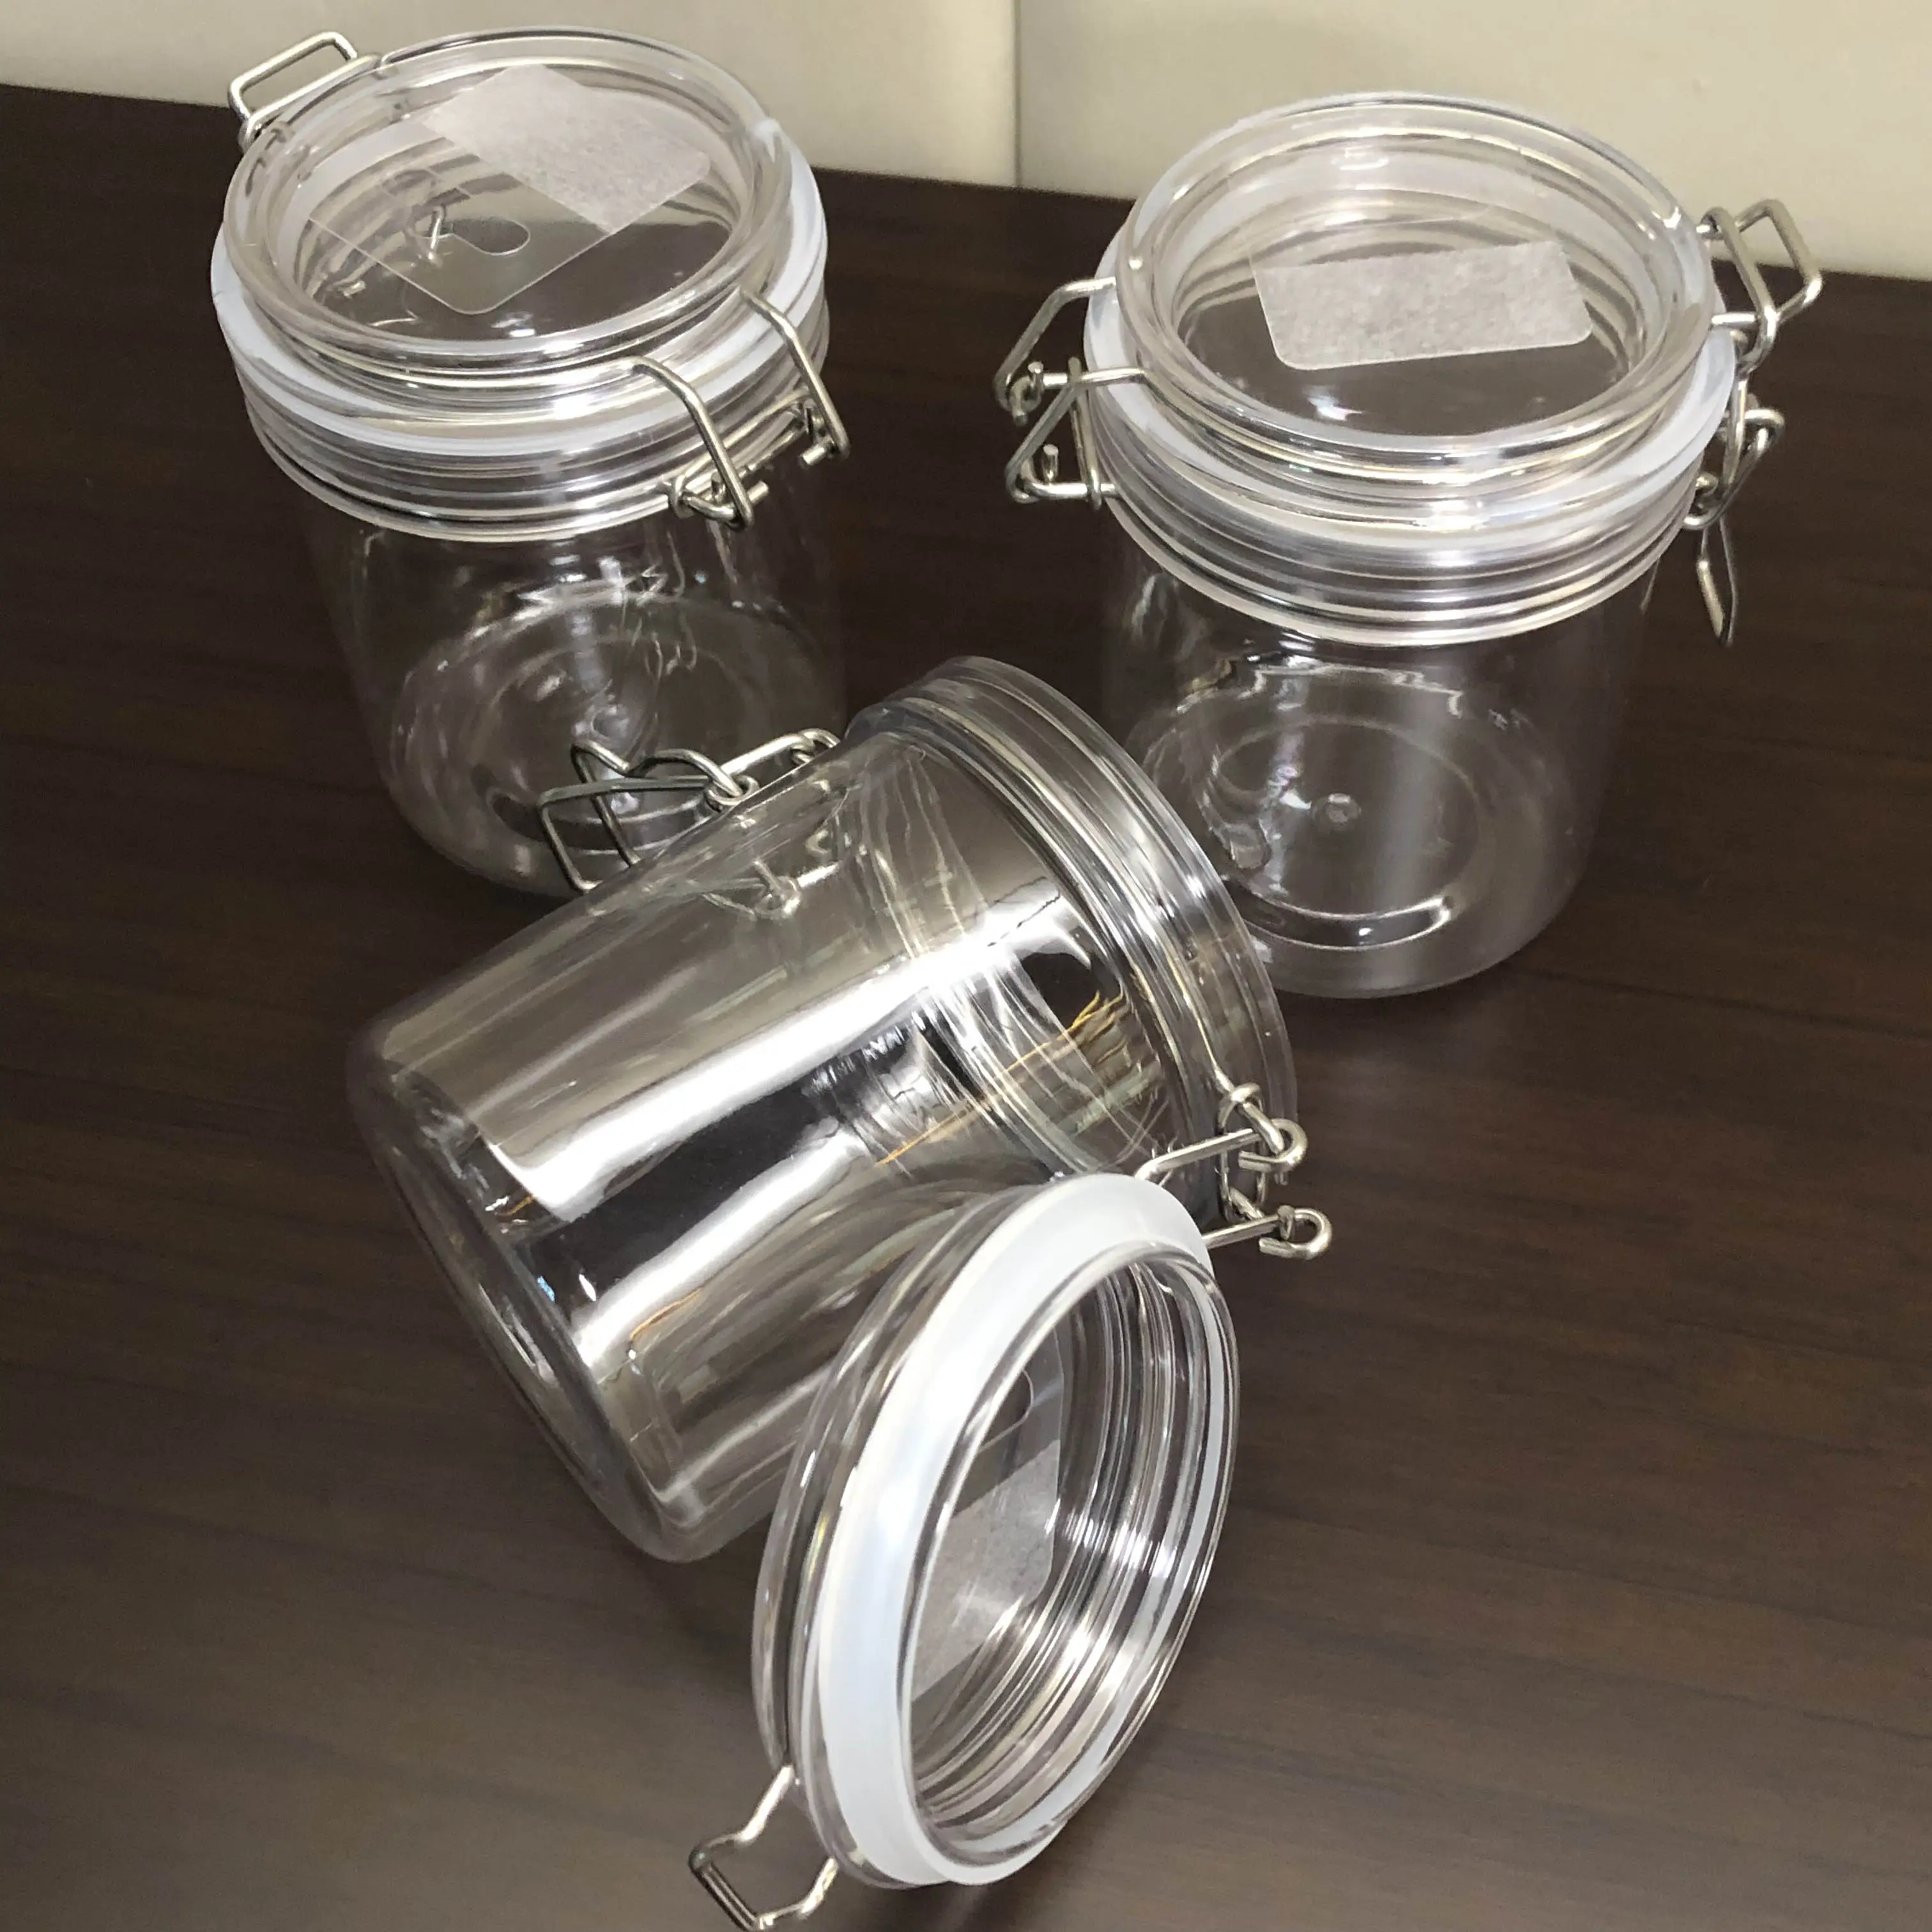 Pet Plastic Candy Jar mit luftdichtem Deckel zur Aufbewahrung Bee Nut Flower Tea leeres Glas mit luftdichtem Verschluss klemm deckel